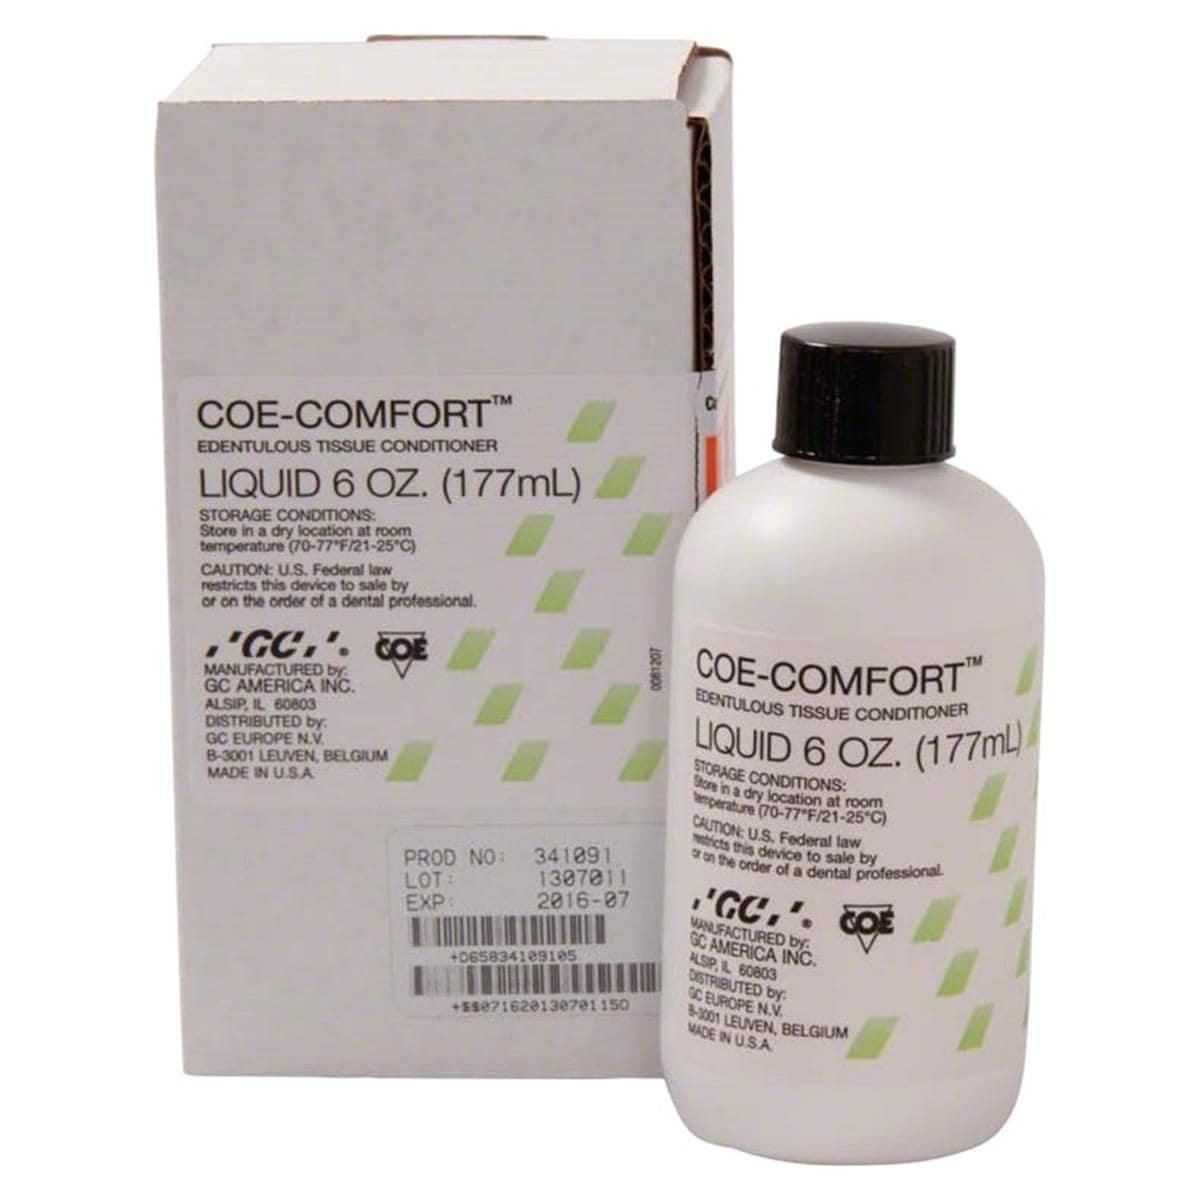 Coe Comfort vloeistof - Flesje, 177 ml